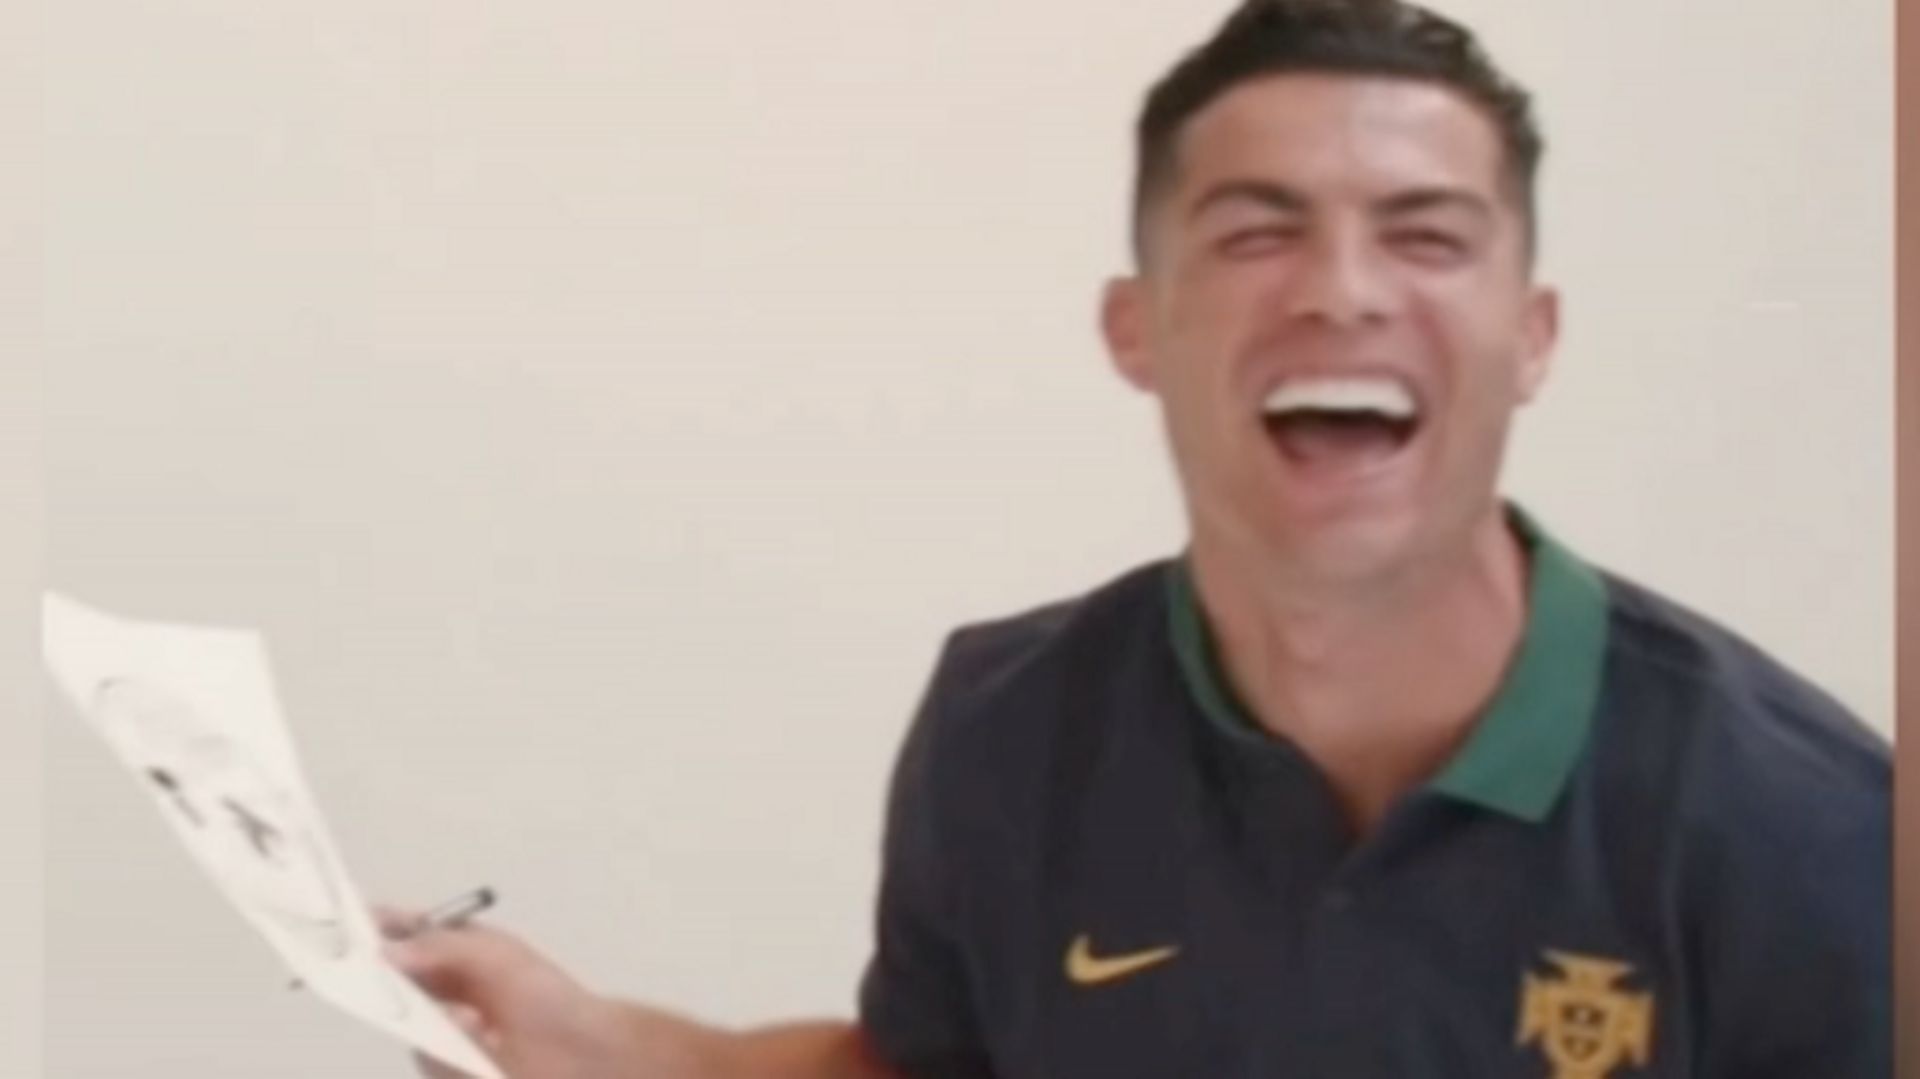 Insolite - Cristiano Ronaldo et Pepe se dessinent mutuellement : c'est raté... mais très drôle